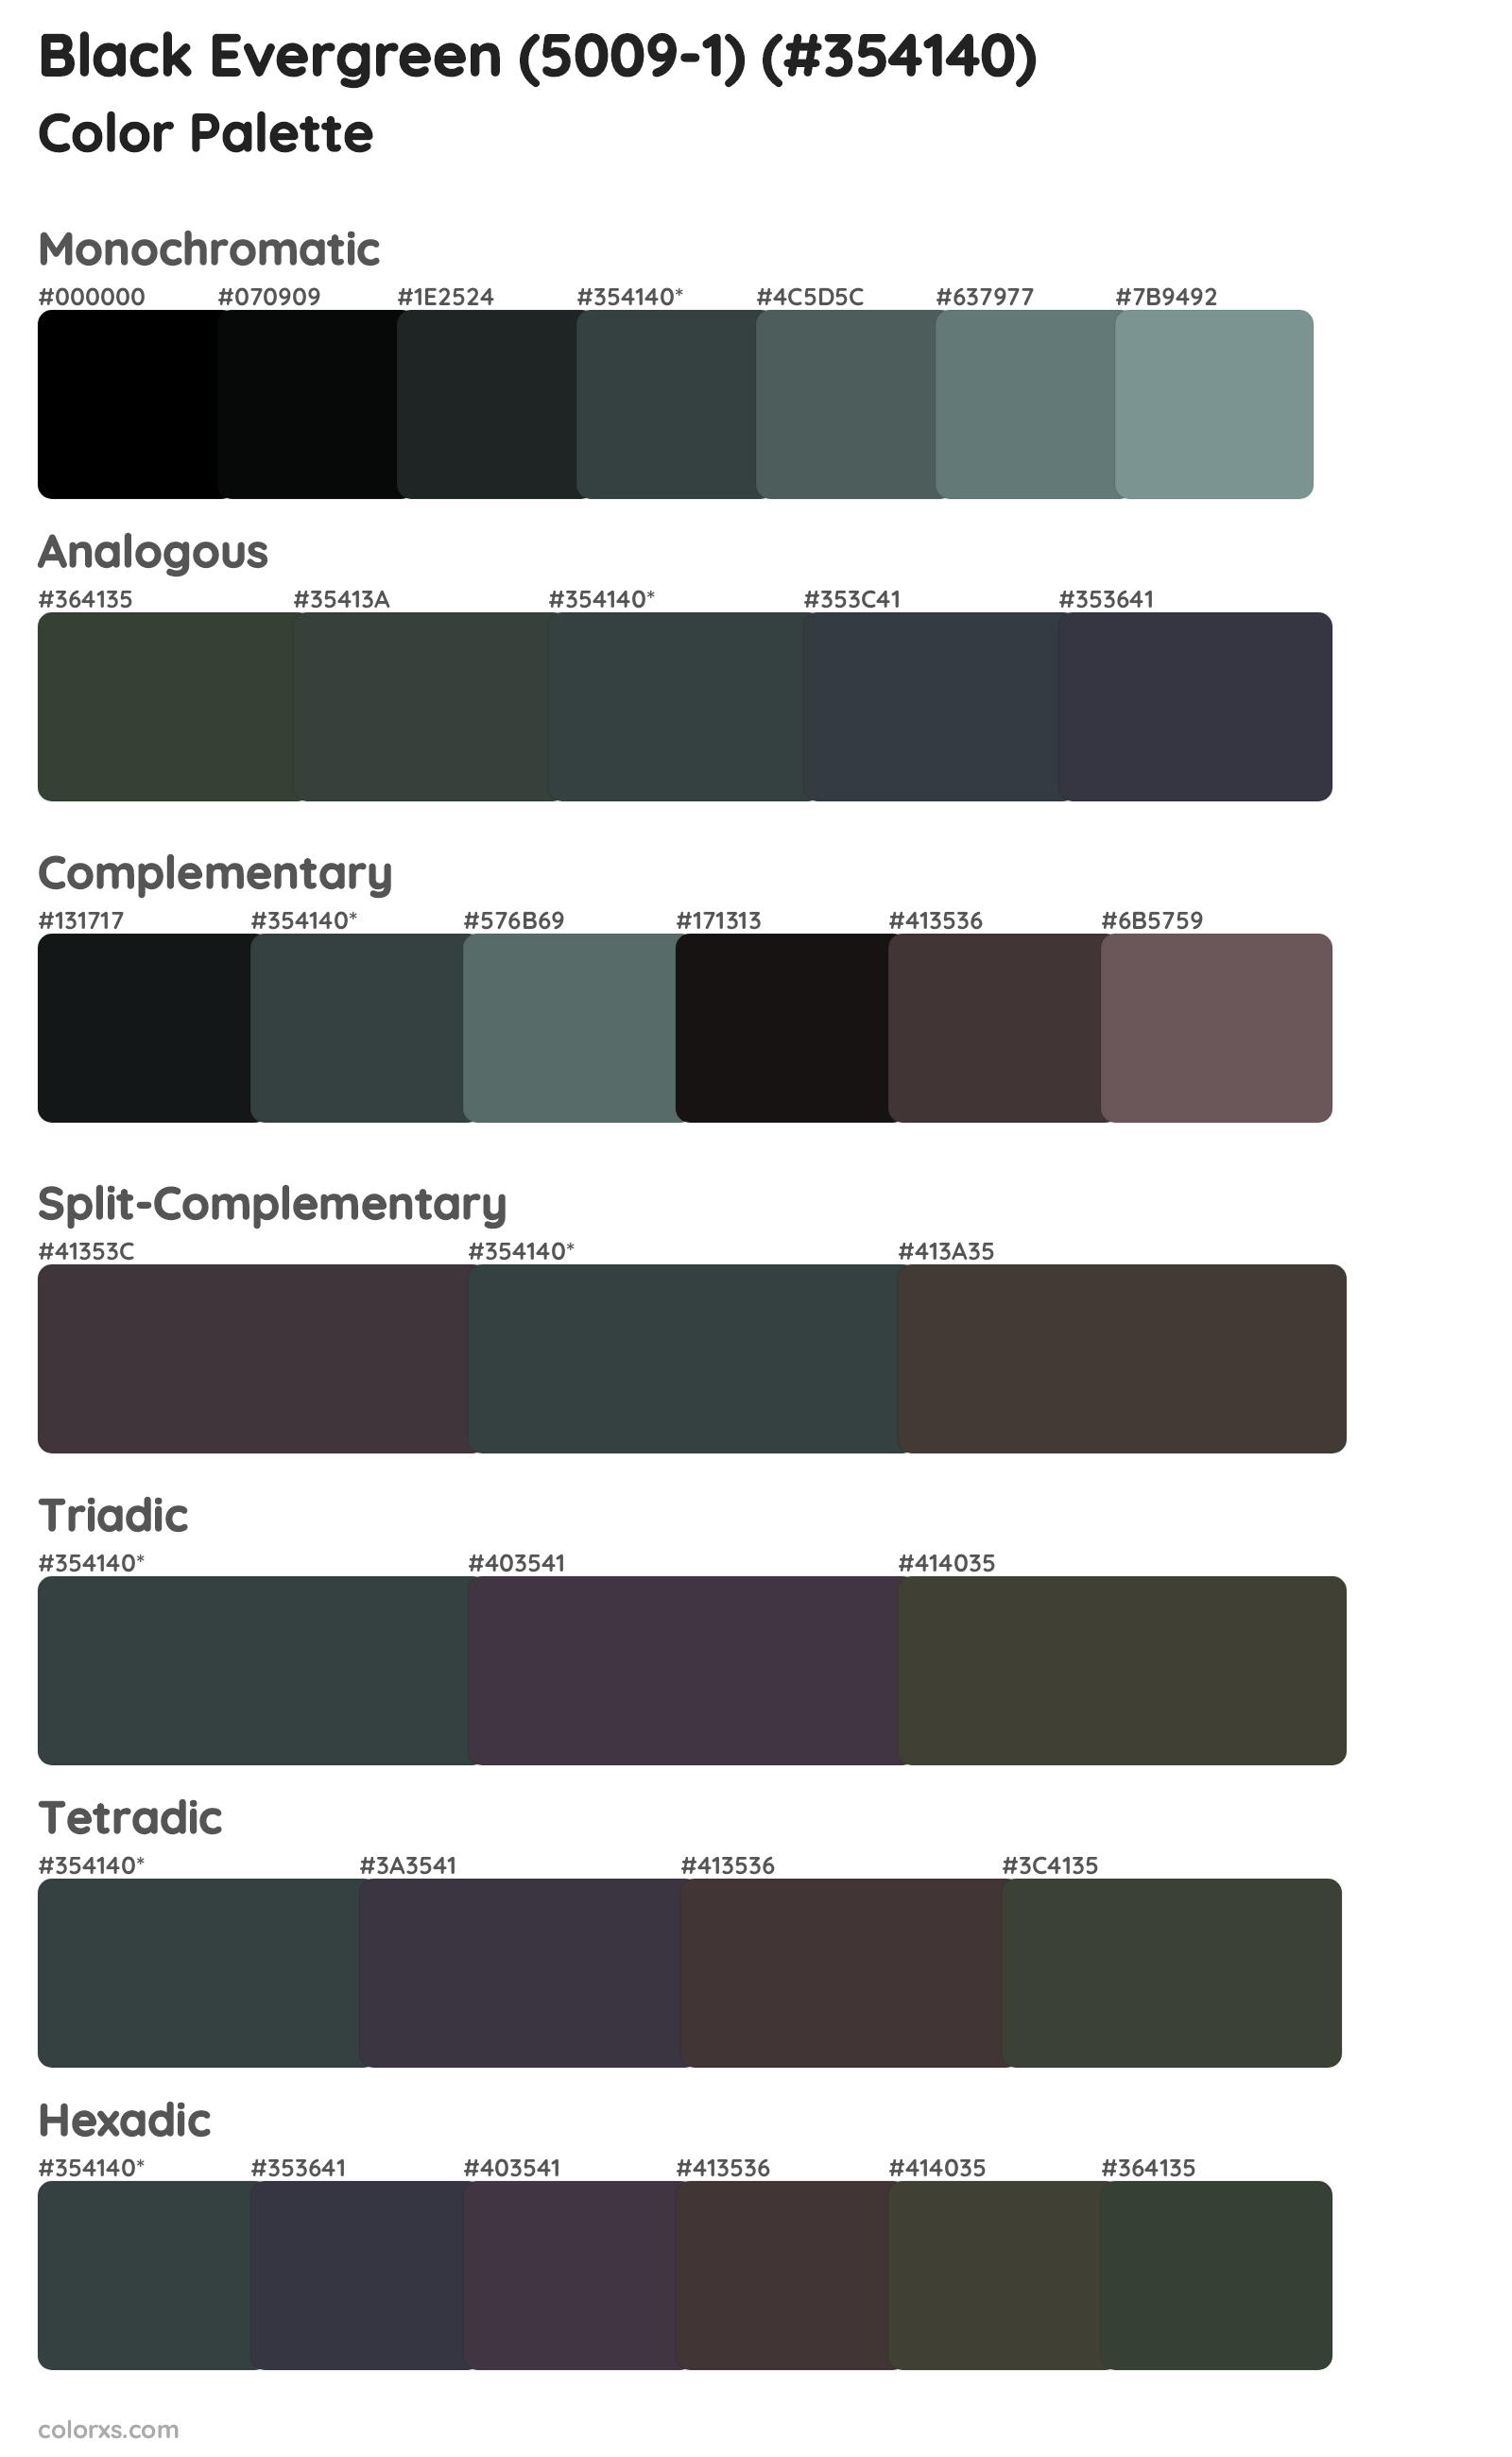 Black Evergreen (5009-1) Color Scheme Palettes